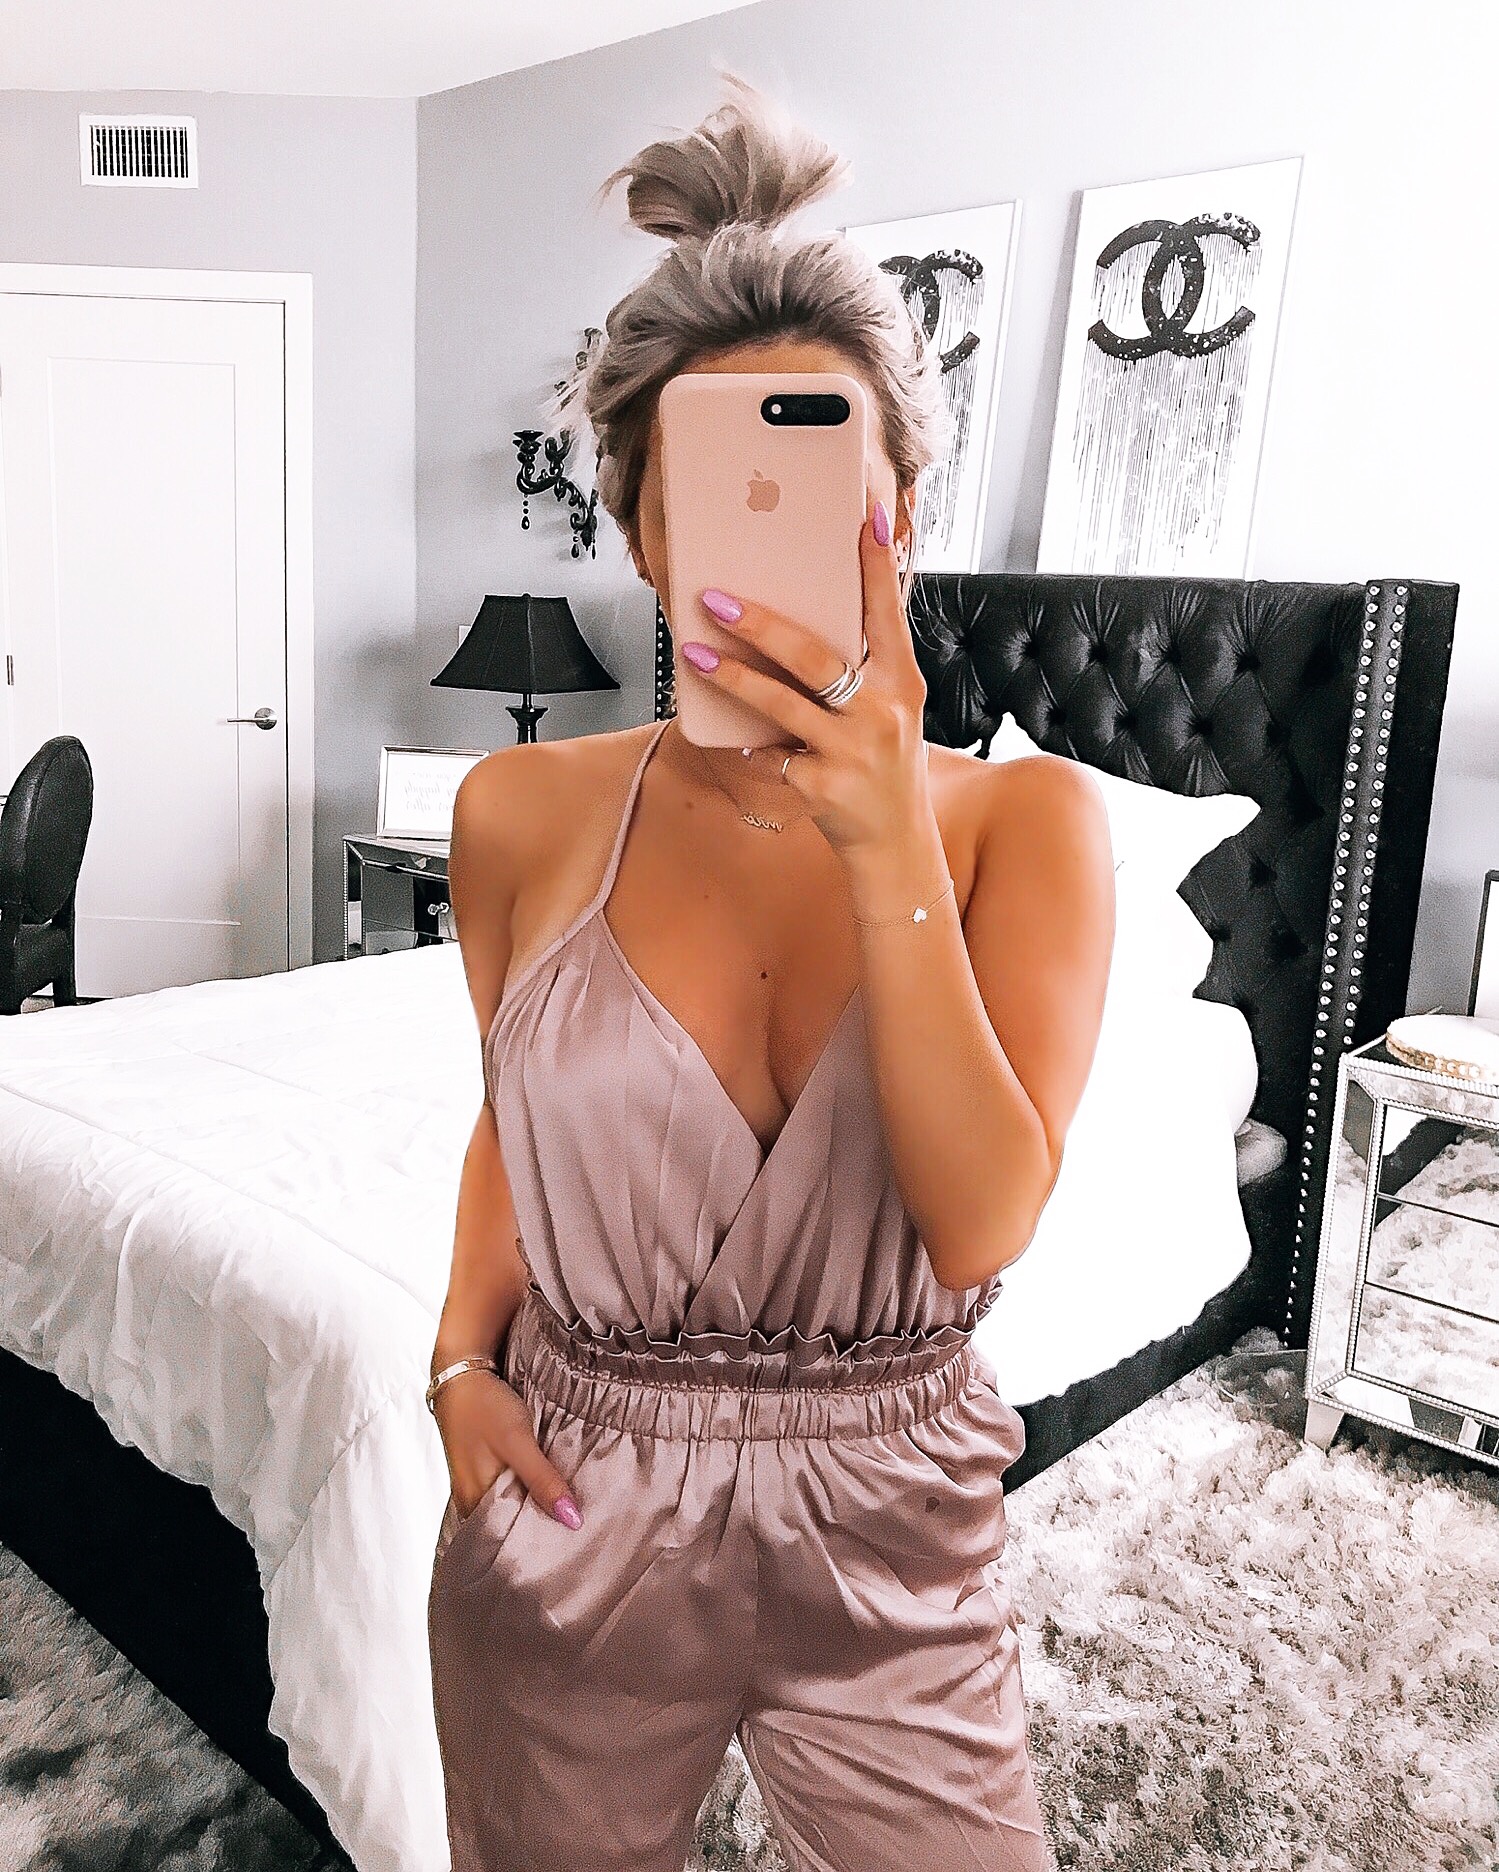 Blondie in the City | HayleyLarue Instagram | Fashion and Decor Blogger